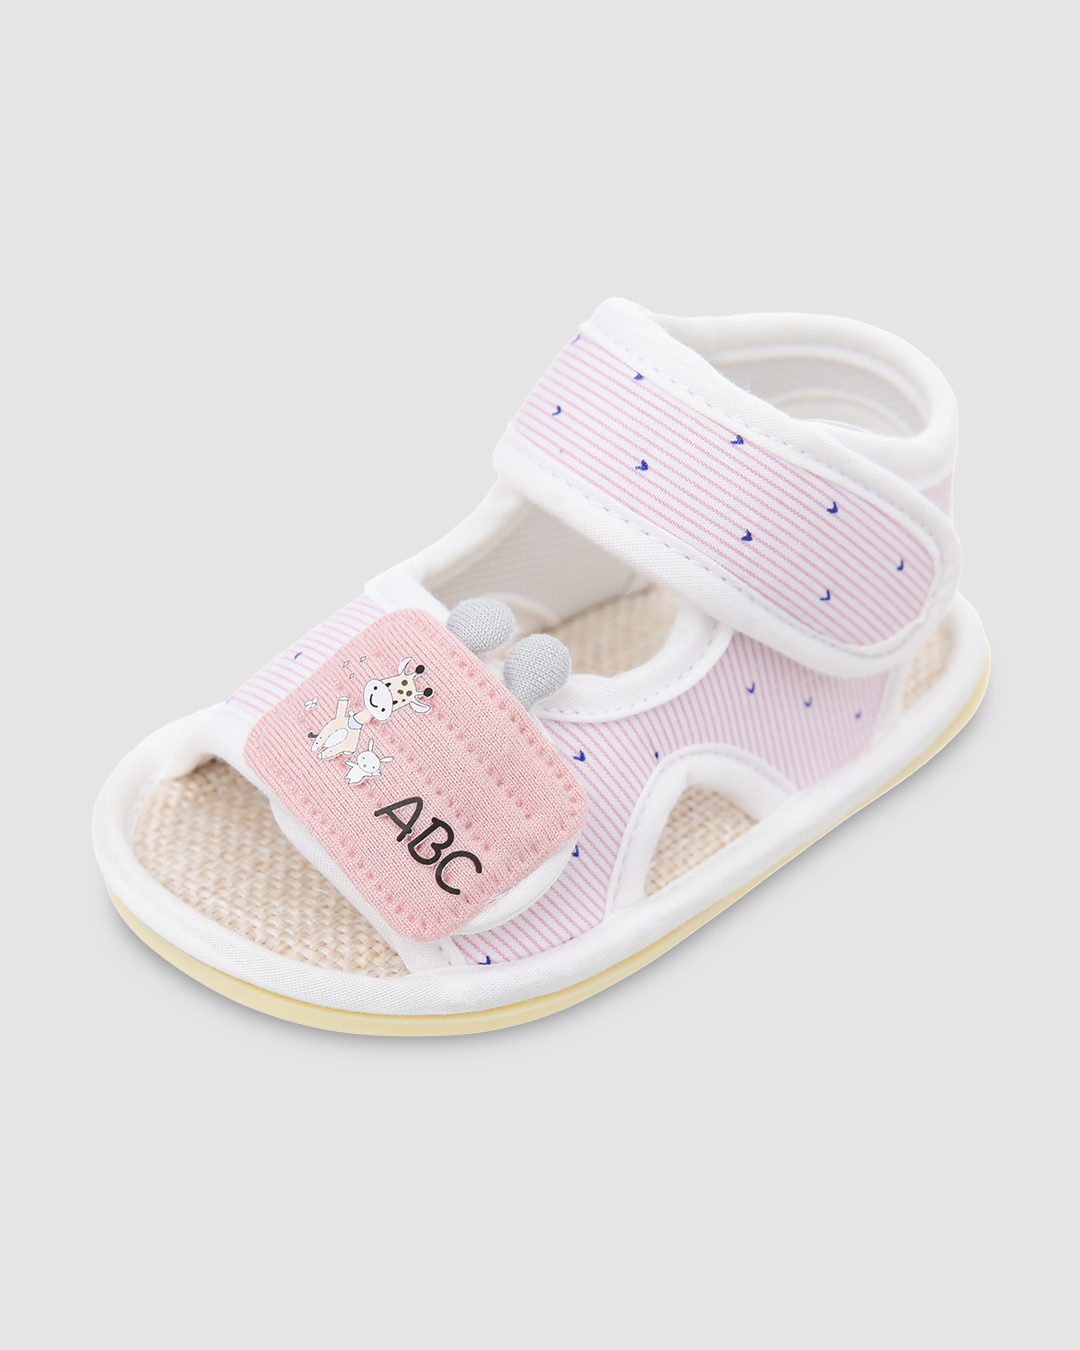 Giày tập đi cho bé Á Châu AC526 in chữ ABC màu hồng